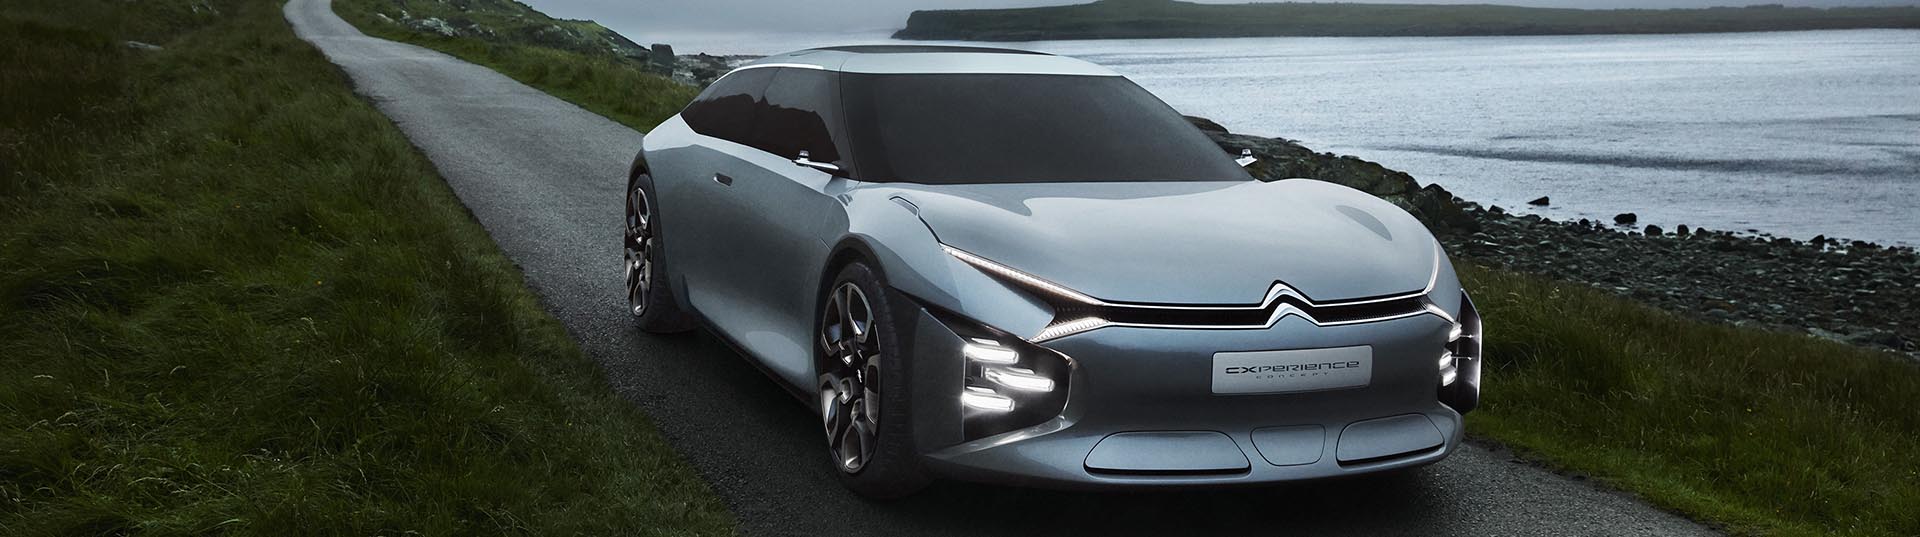 Experience concept, o topo de gama segundo a Citroën